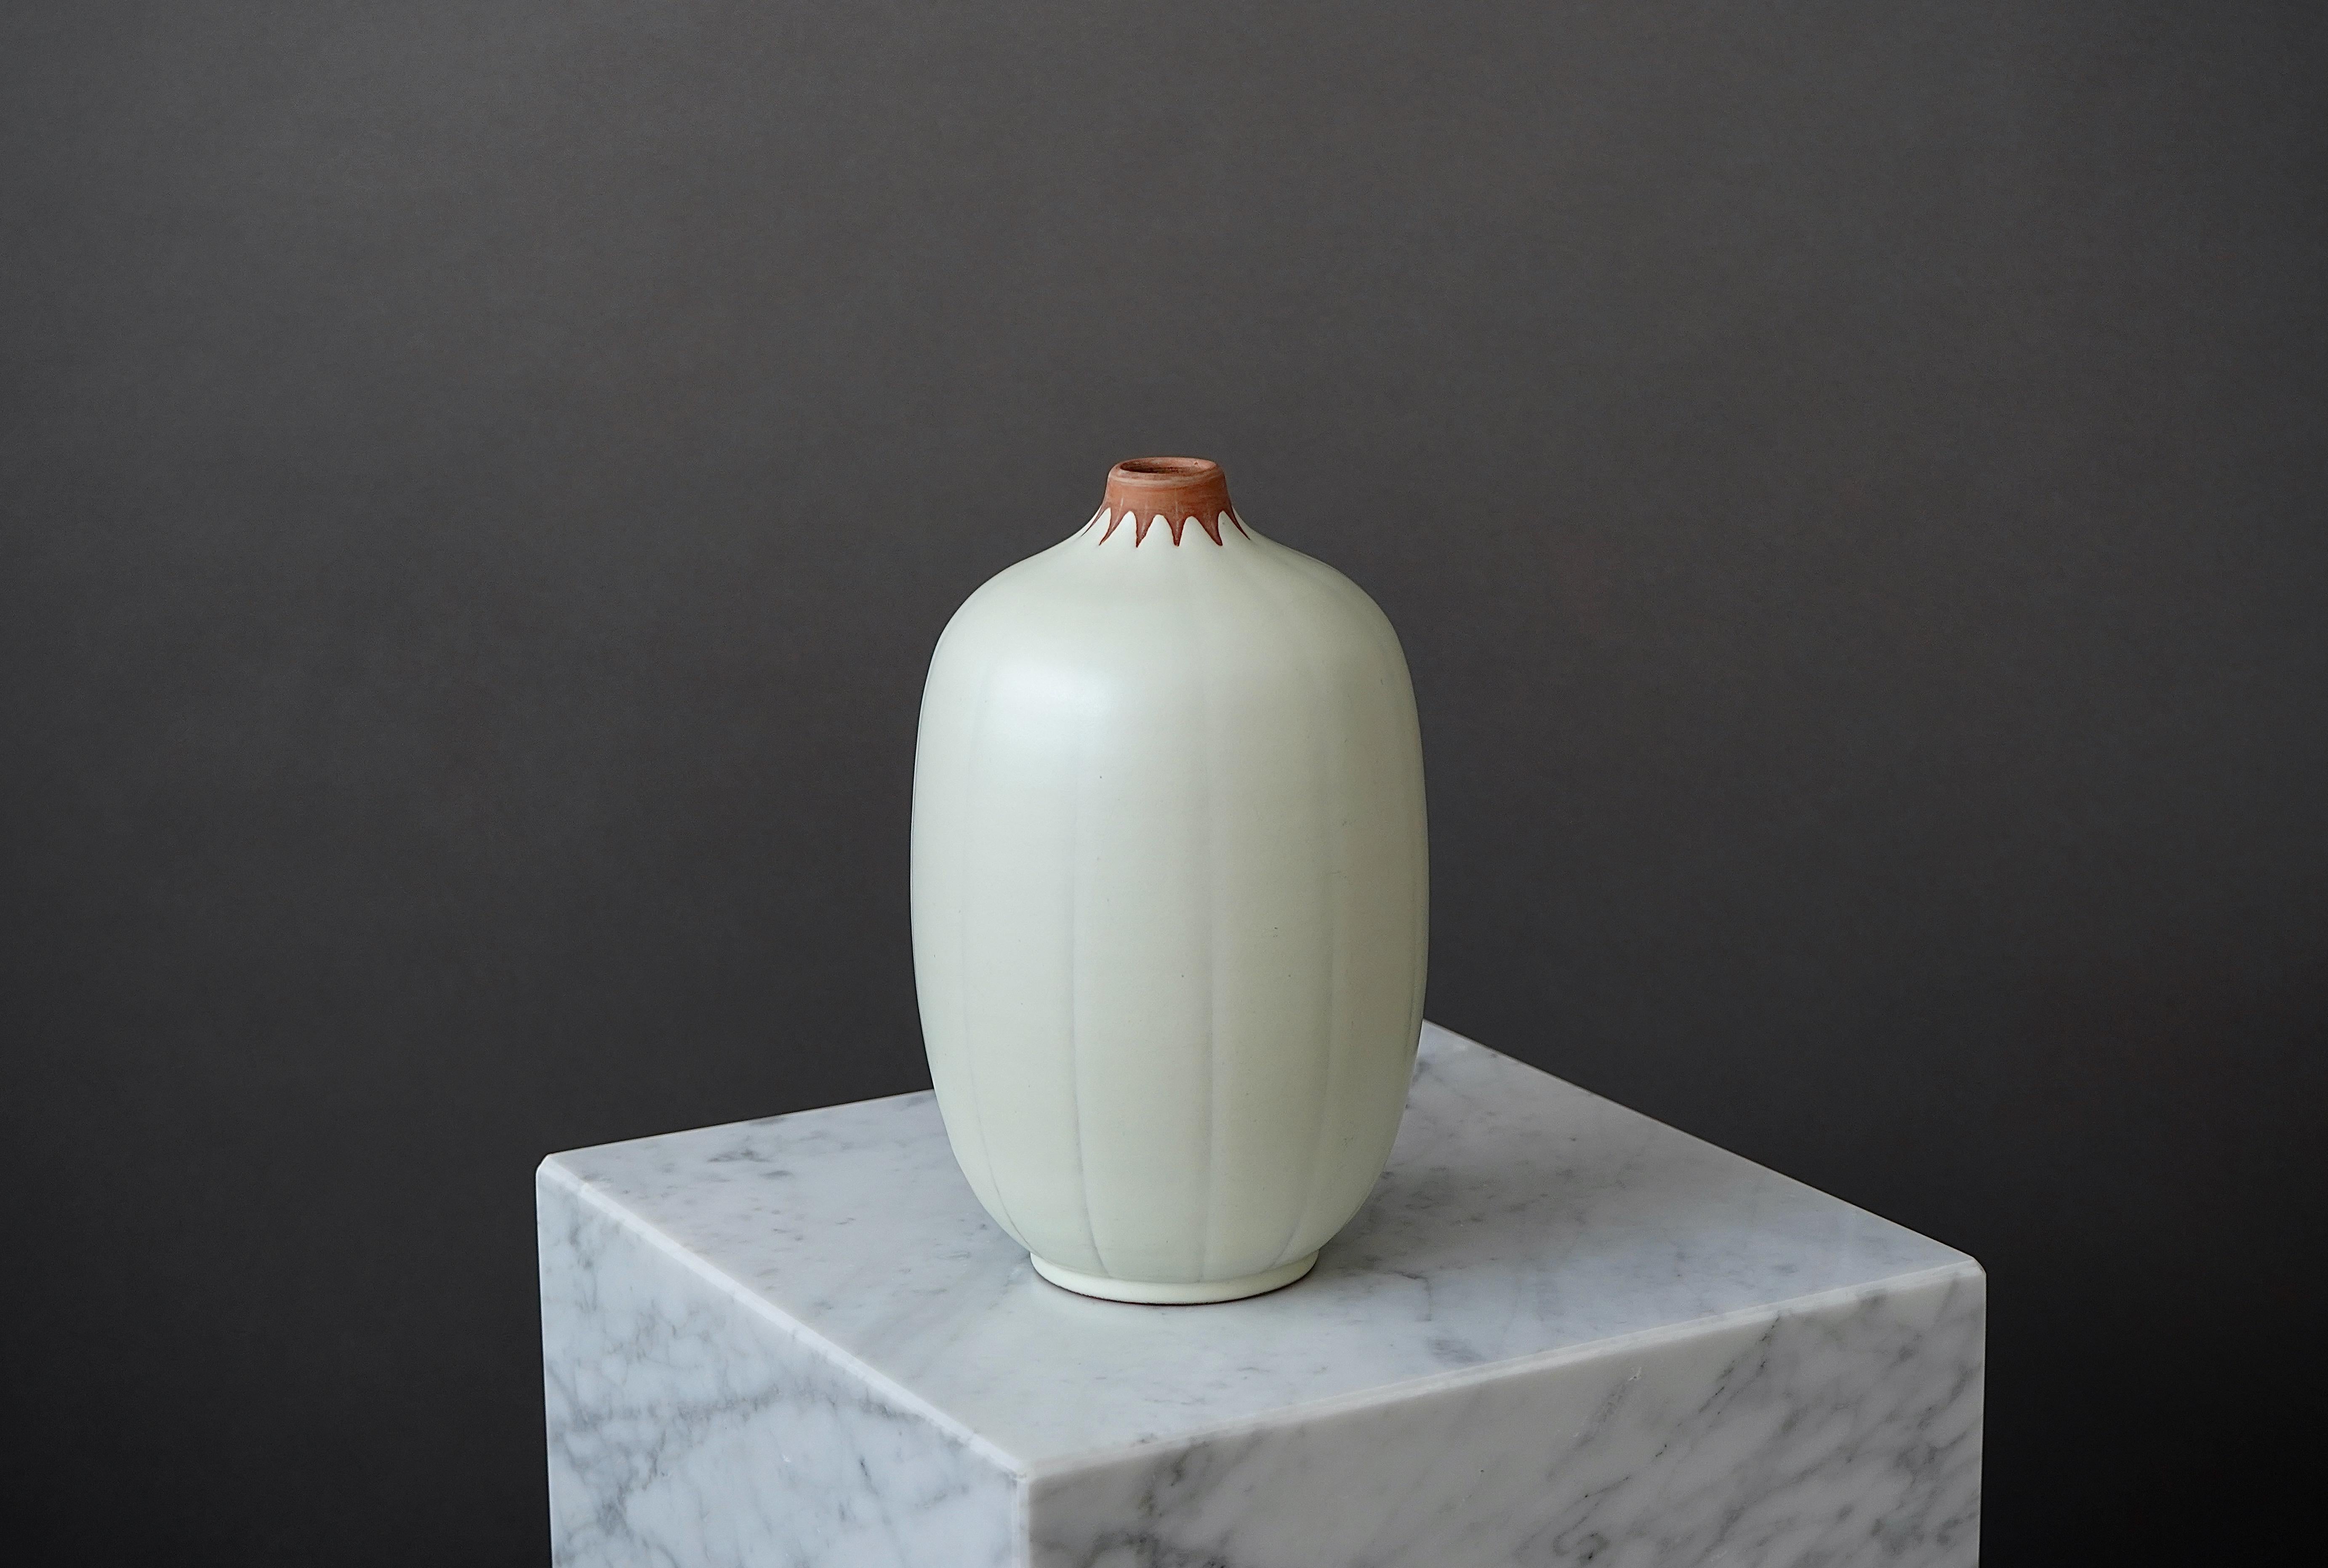 Eine schöne und seltene Vase von Anna-Lisa Thomson für Upsala Ekeby, Schweden, 1940er Jahre.

Ausgezeichneter Zustand. 
Eingeprägt 'EKEBY' und '18'.

Anna-Lisa Thomson (1905-1952) wurde in der südschwedischen Stadt Karlskrona geboren. Sie erhielt